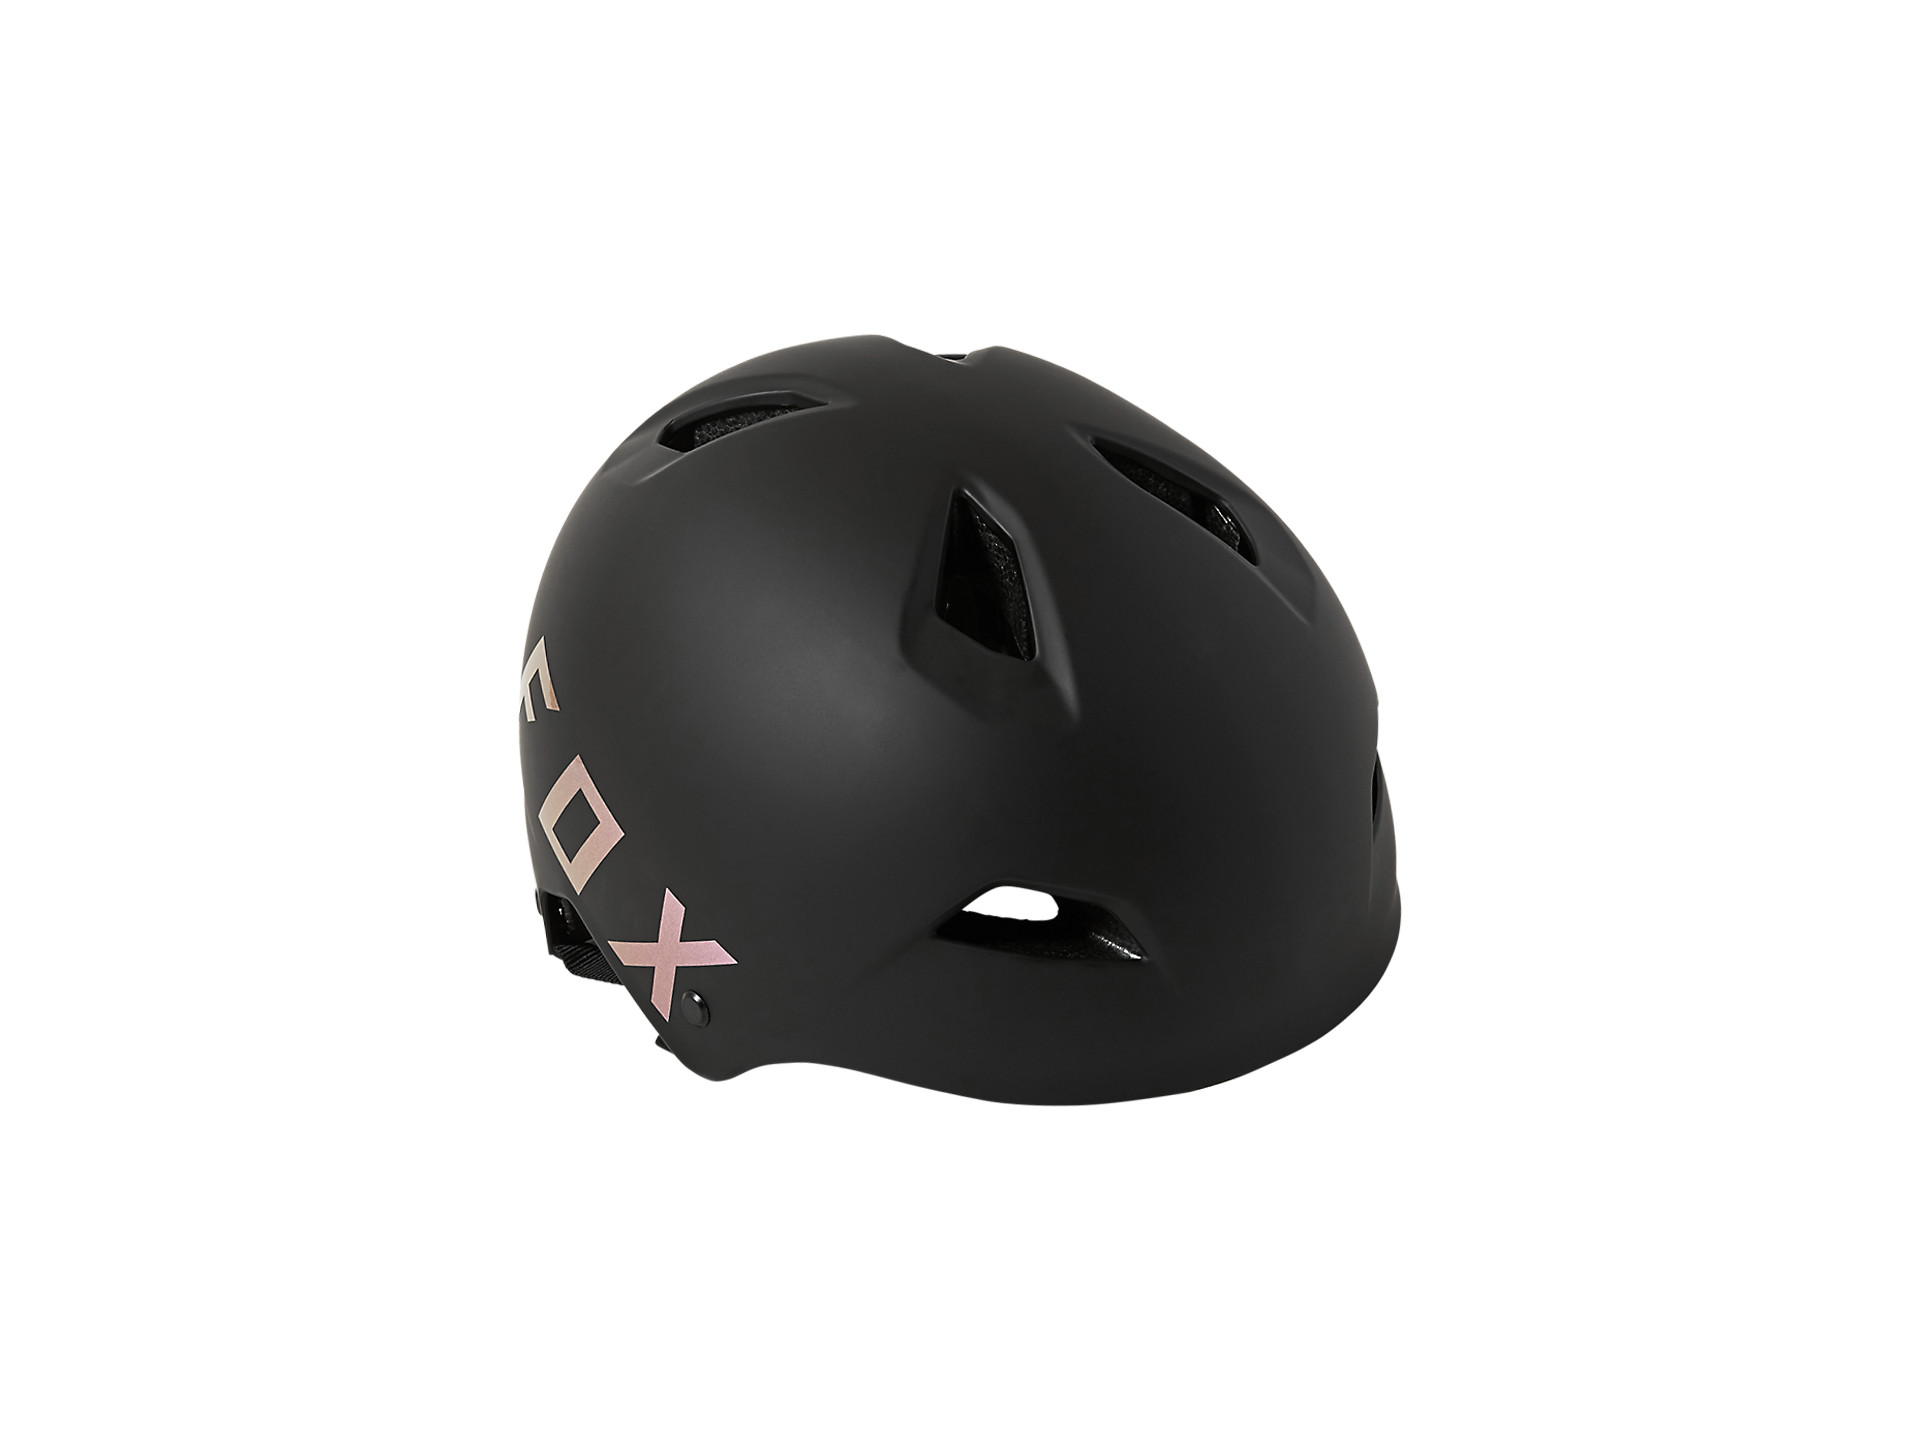 Fox Head Flight Sport Trail Bike Dirt Jump Adult Protective Helmet 